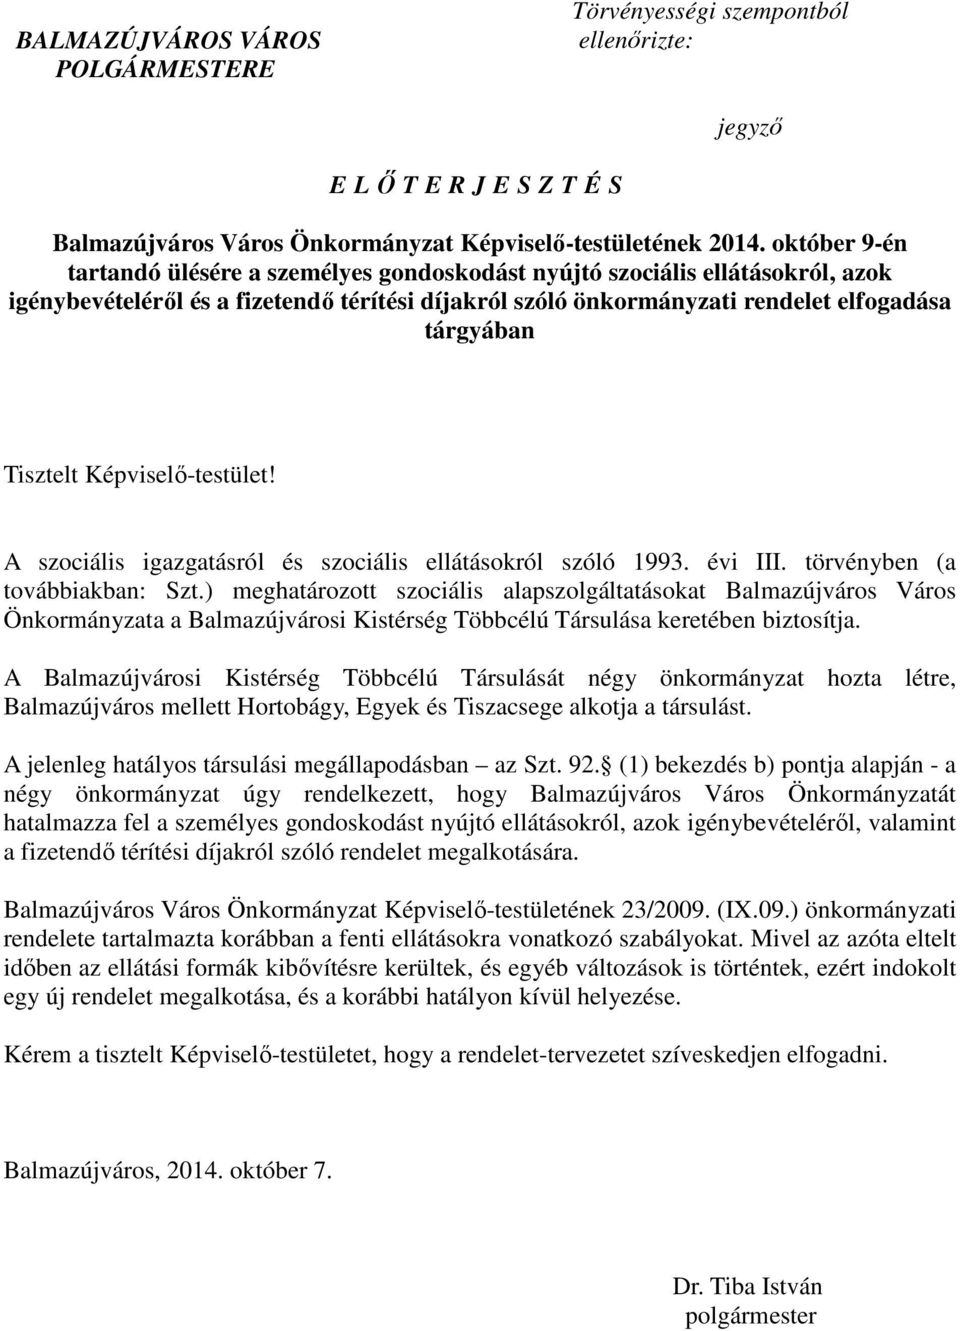 Képviselı-testület! A szociális igazgatásról és szociális ellátásokról szóló 1993. évi III. törvényben (a továbbiakban: Szt.